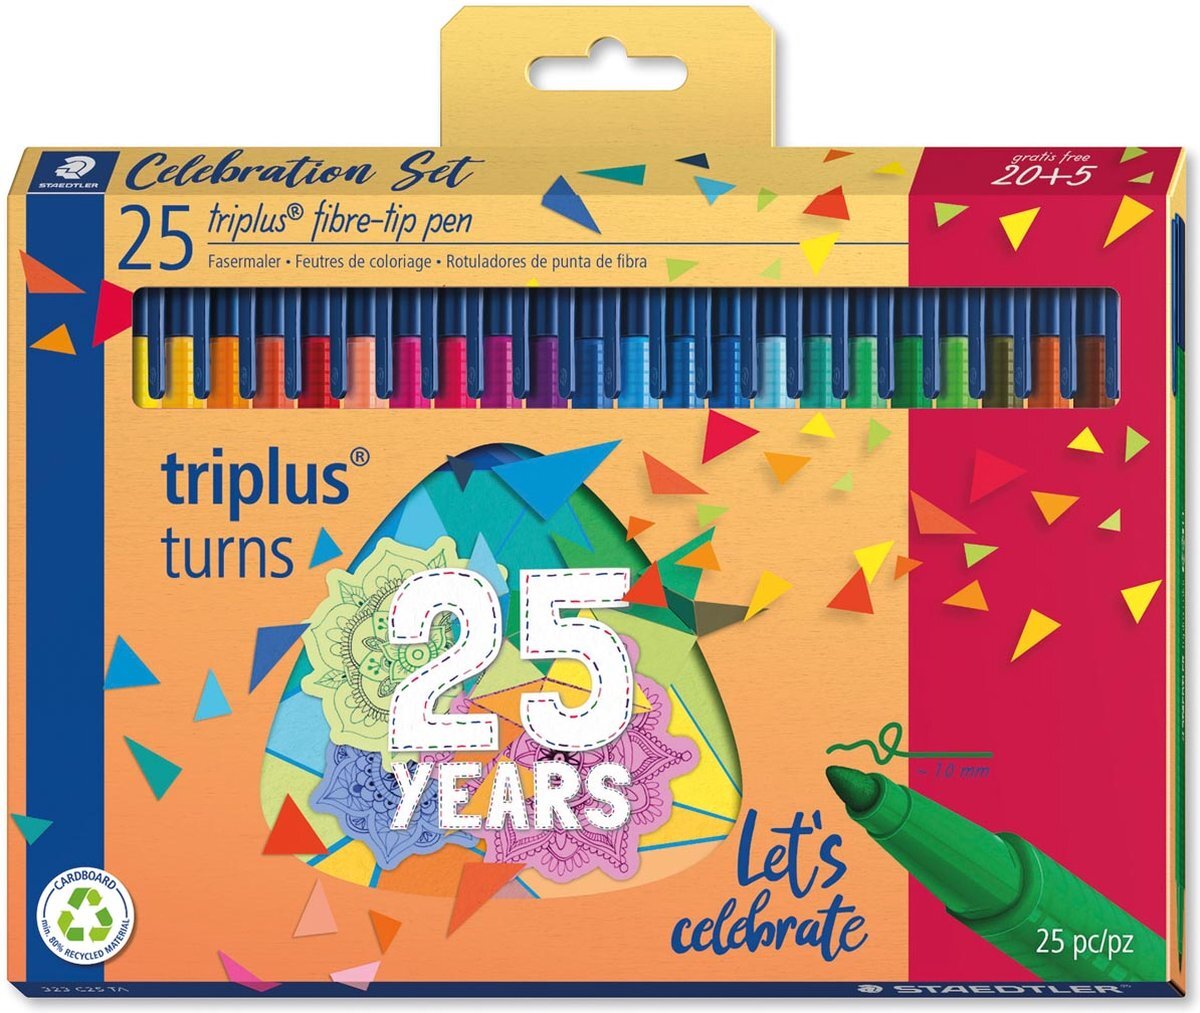 Staedtler Fasermaler triplus color, 20 + 5 Celebration Set